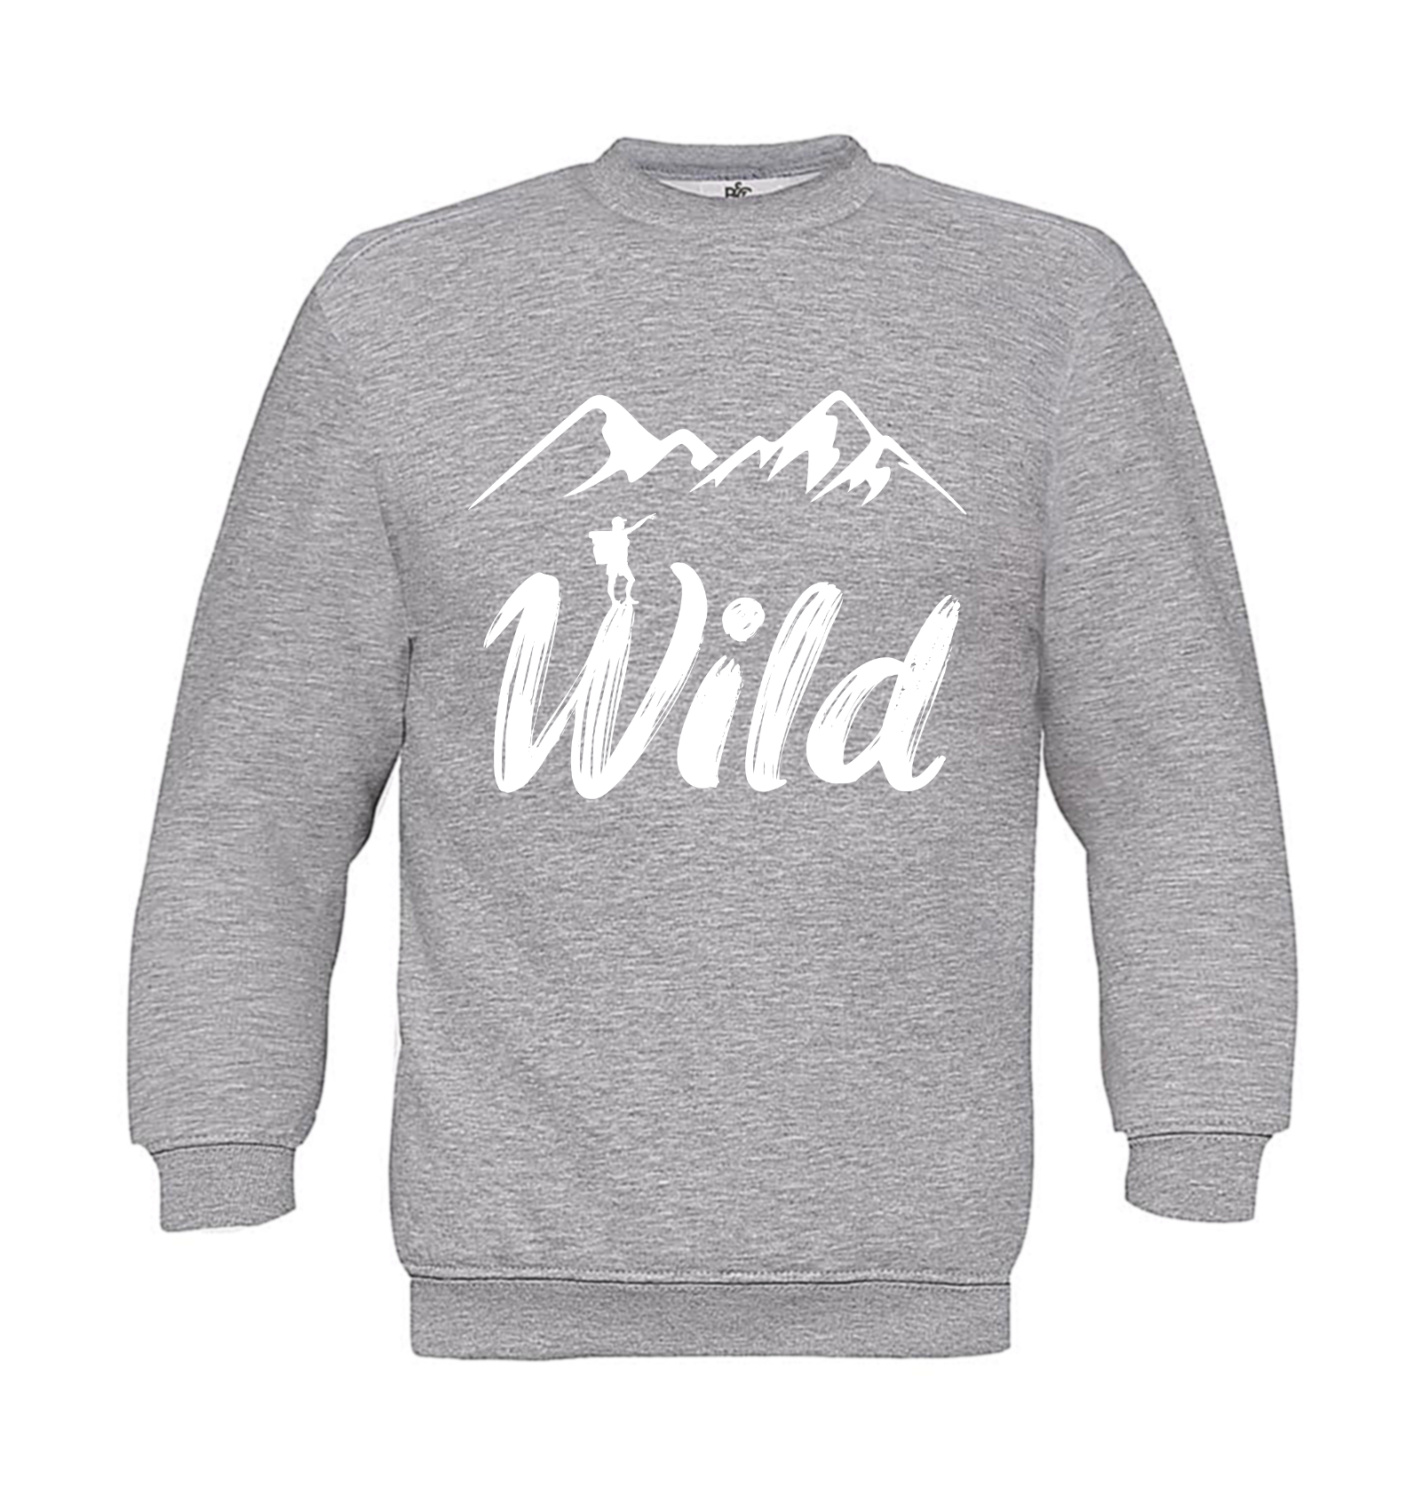 Sweatshirt Kinder Outdoor - Wild